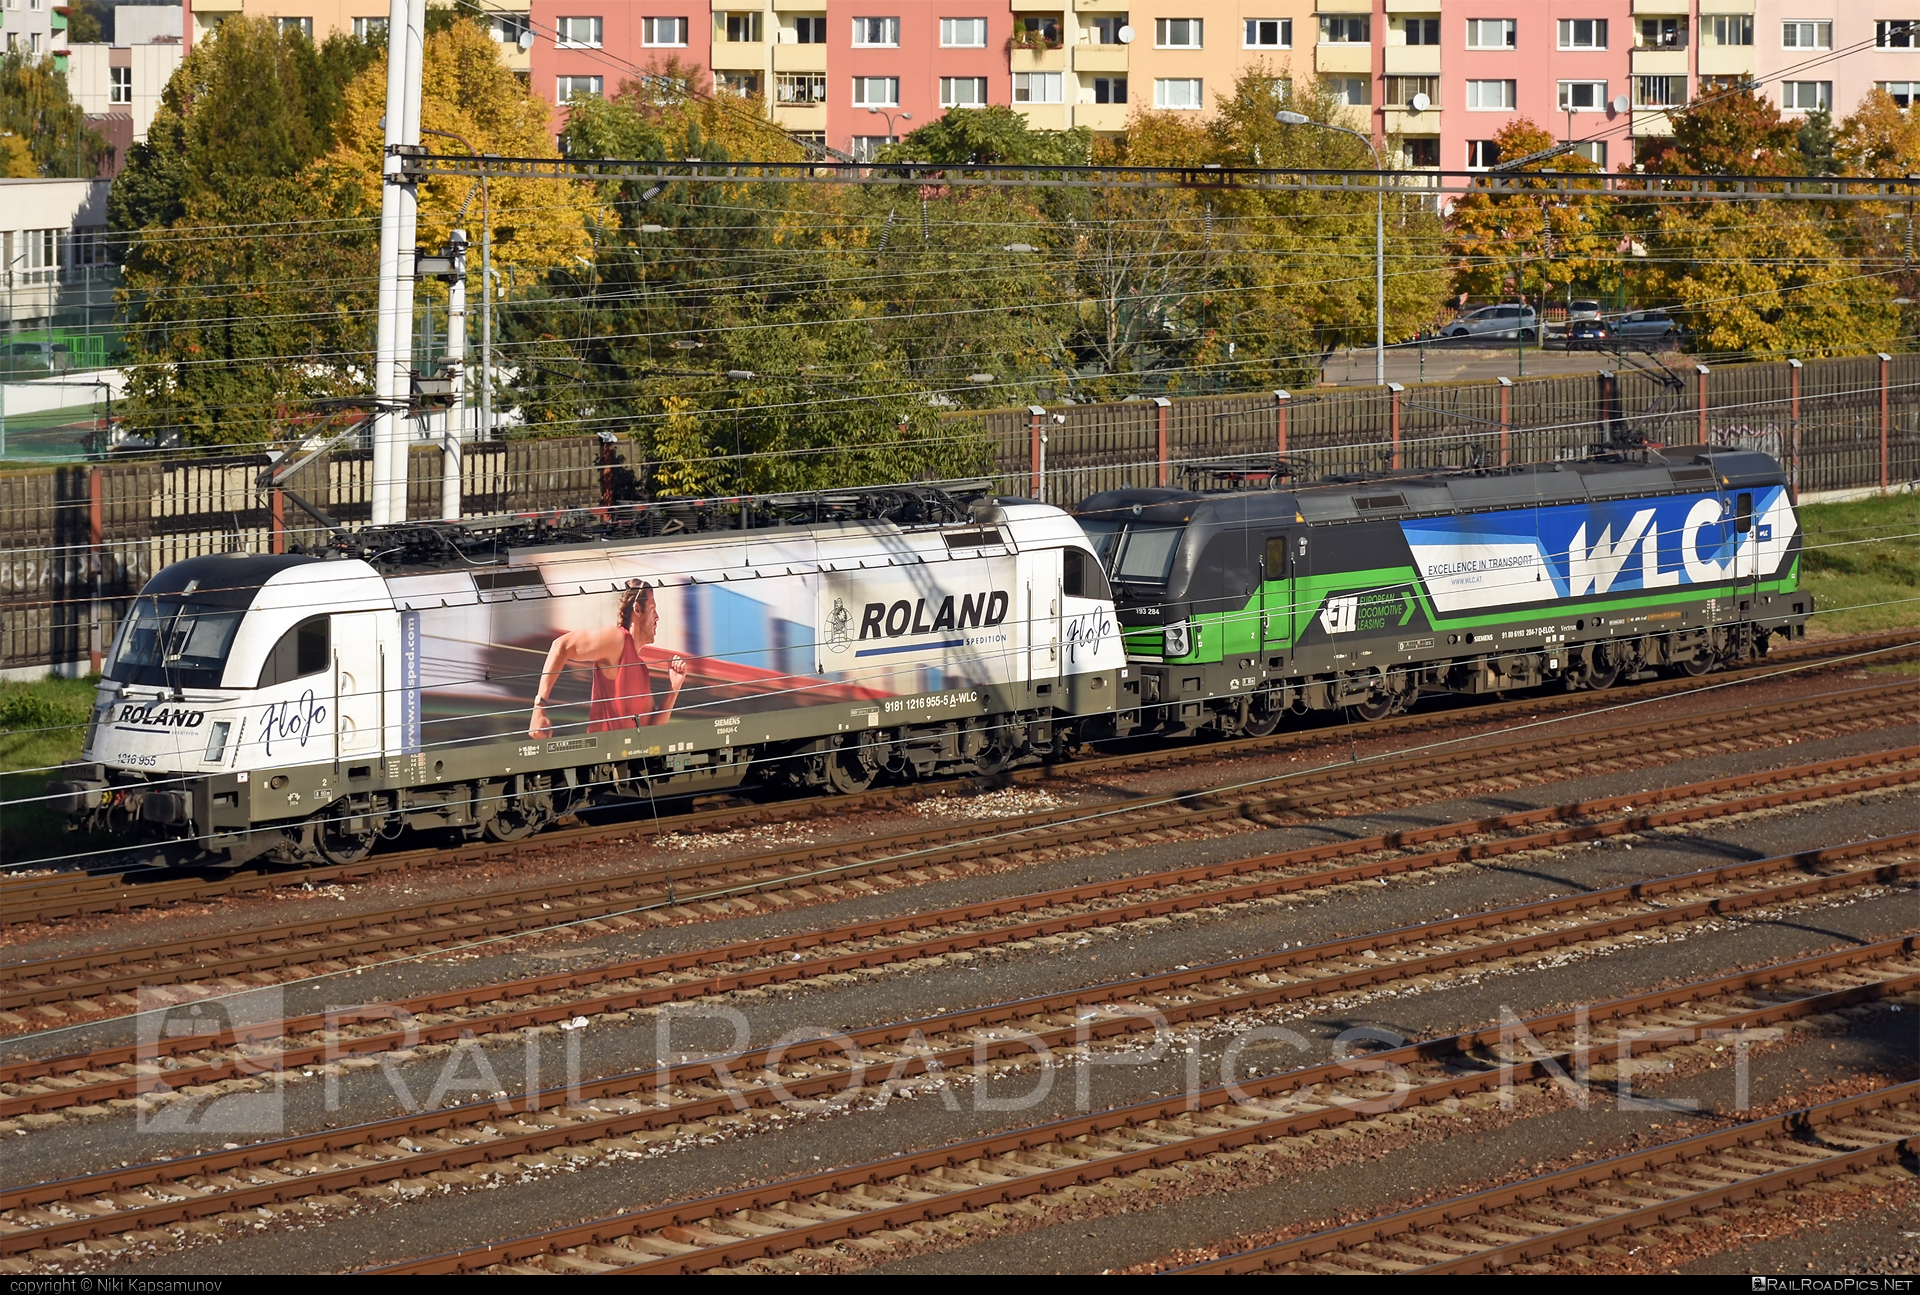 Siemens ES 64 U4 - 1216 955 operated by Wiener Lokalbahnen Cargo GmbH #es64 #es64u4 #eurosprinter #roland #siemens #siemensEs64 #siemensEs64u4 #siemenstaurus #taurus #tauruslocomotive #wienerlokalbahnencargo #wienerlokalbahnencargogmbh #wlc